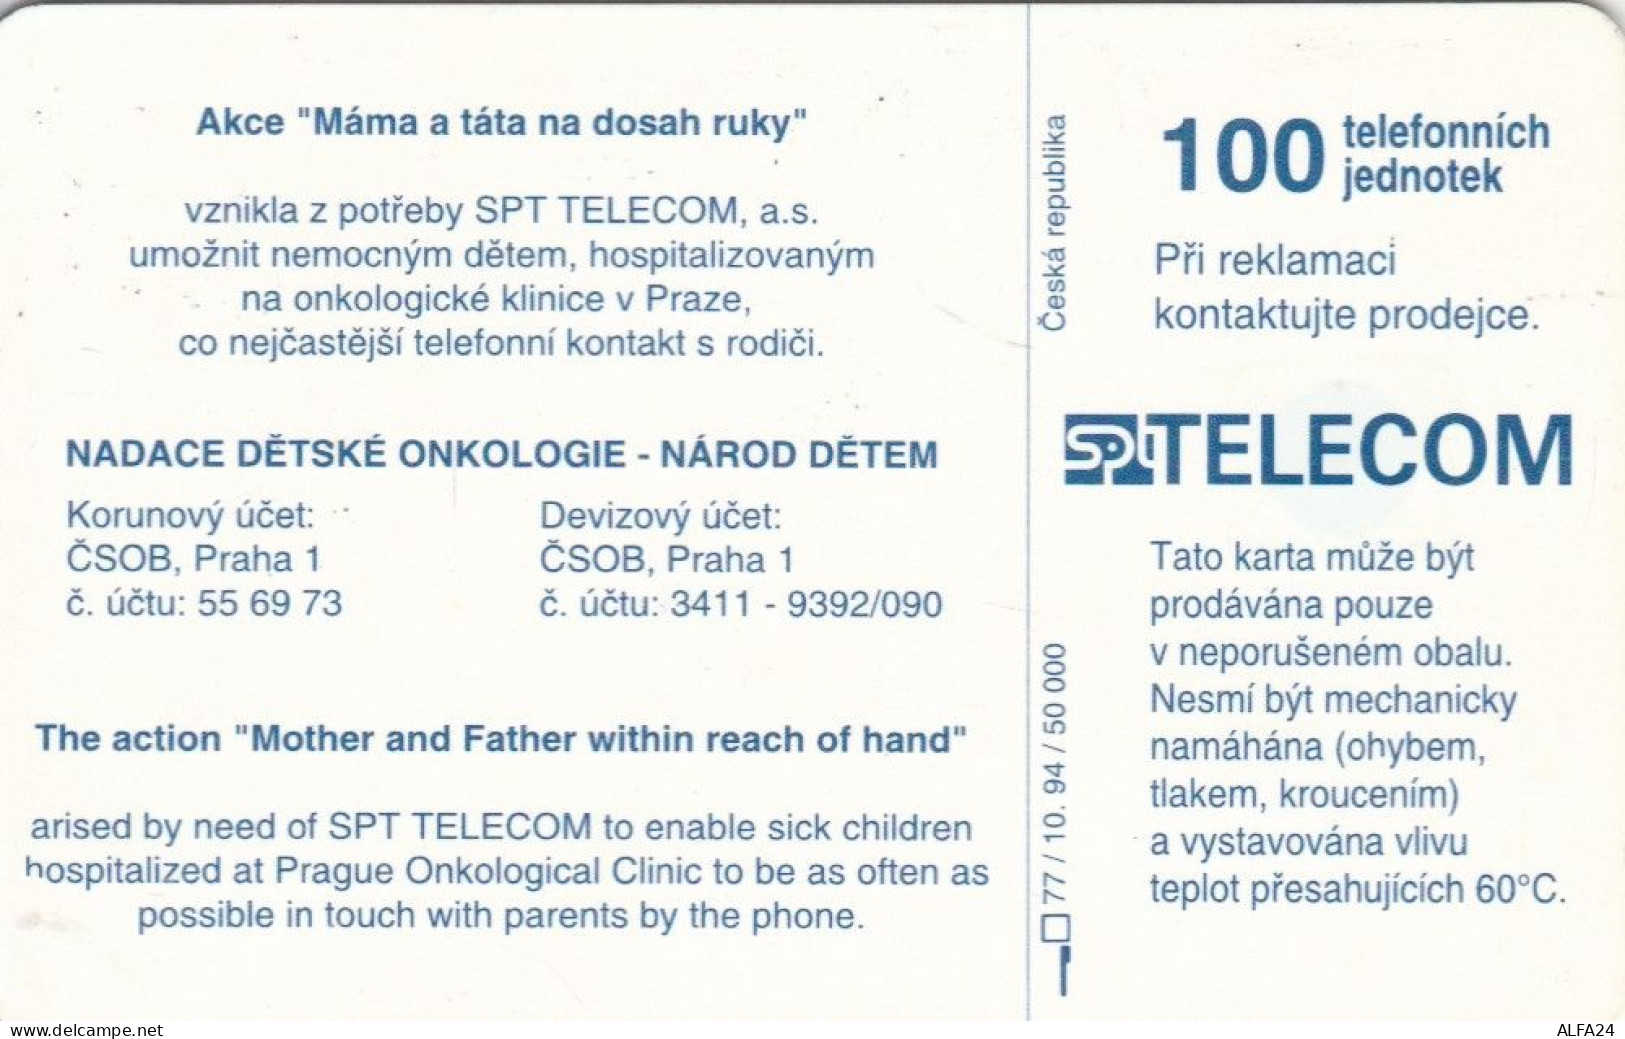 PHONE CARD REPUBBLICA CECA  (E95.19.7 - Tchéquie